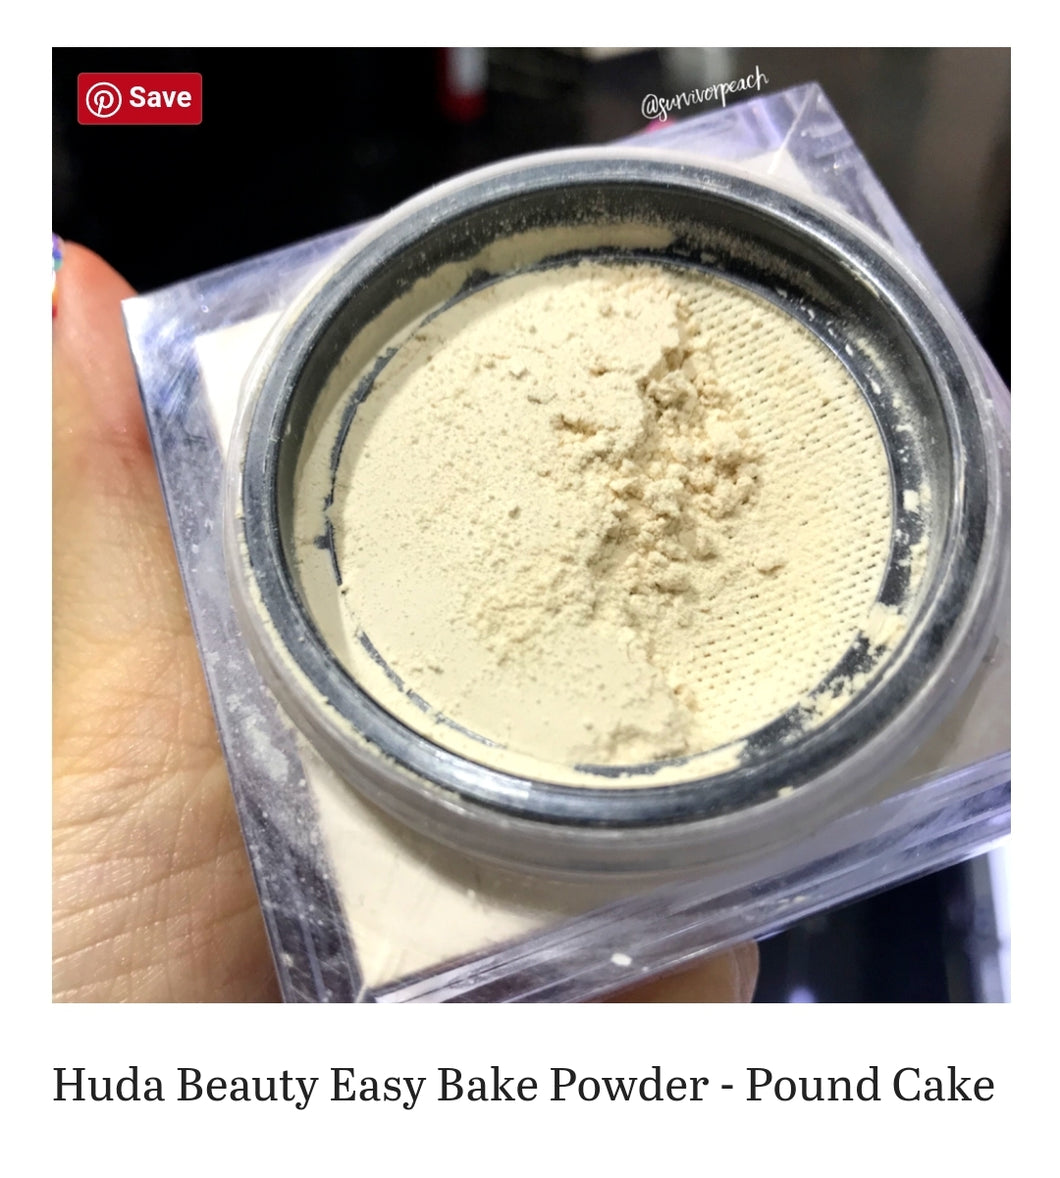 Huda Beauty
Easy bake loose powder